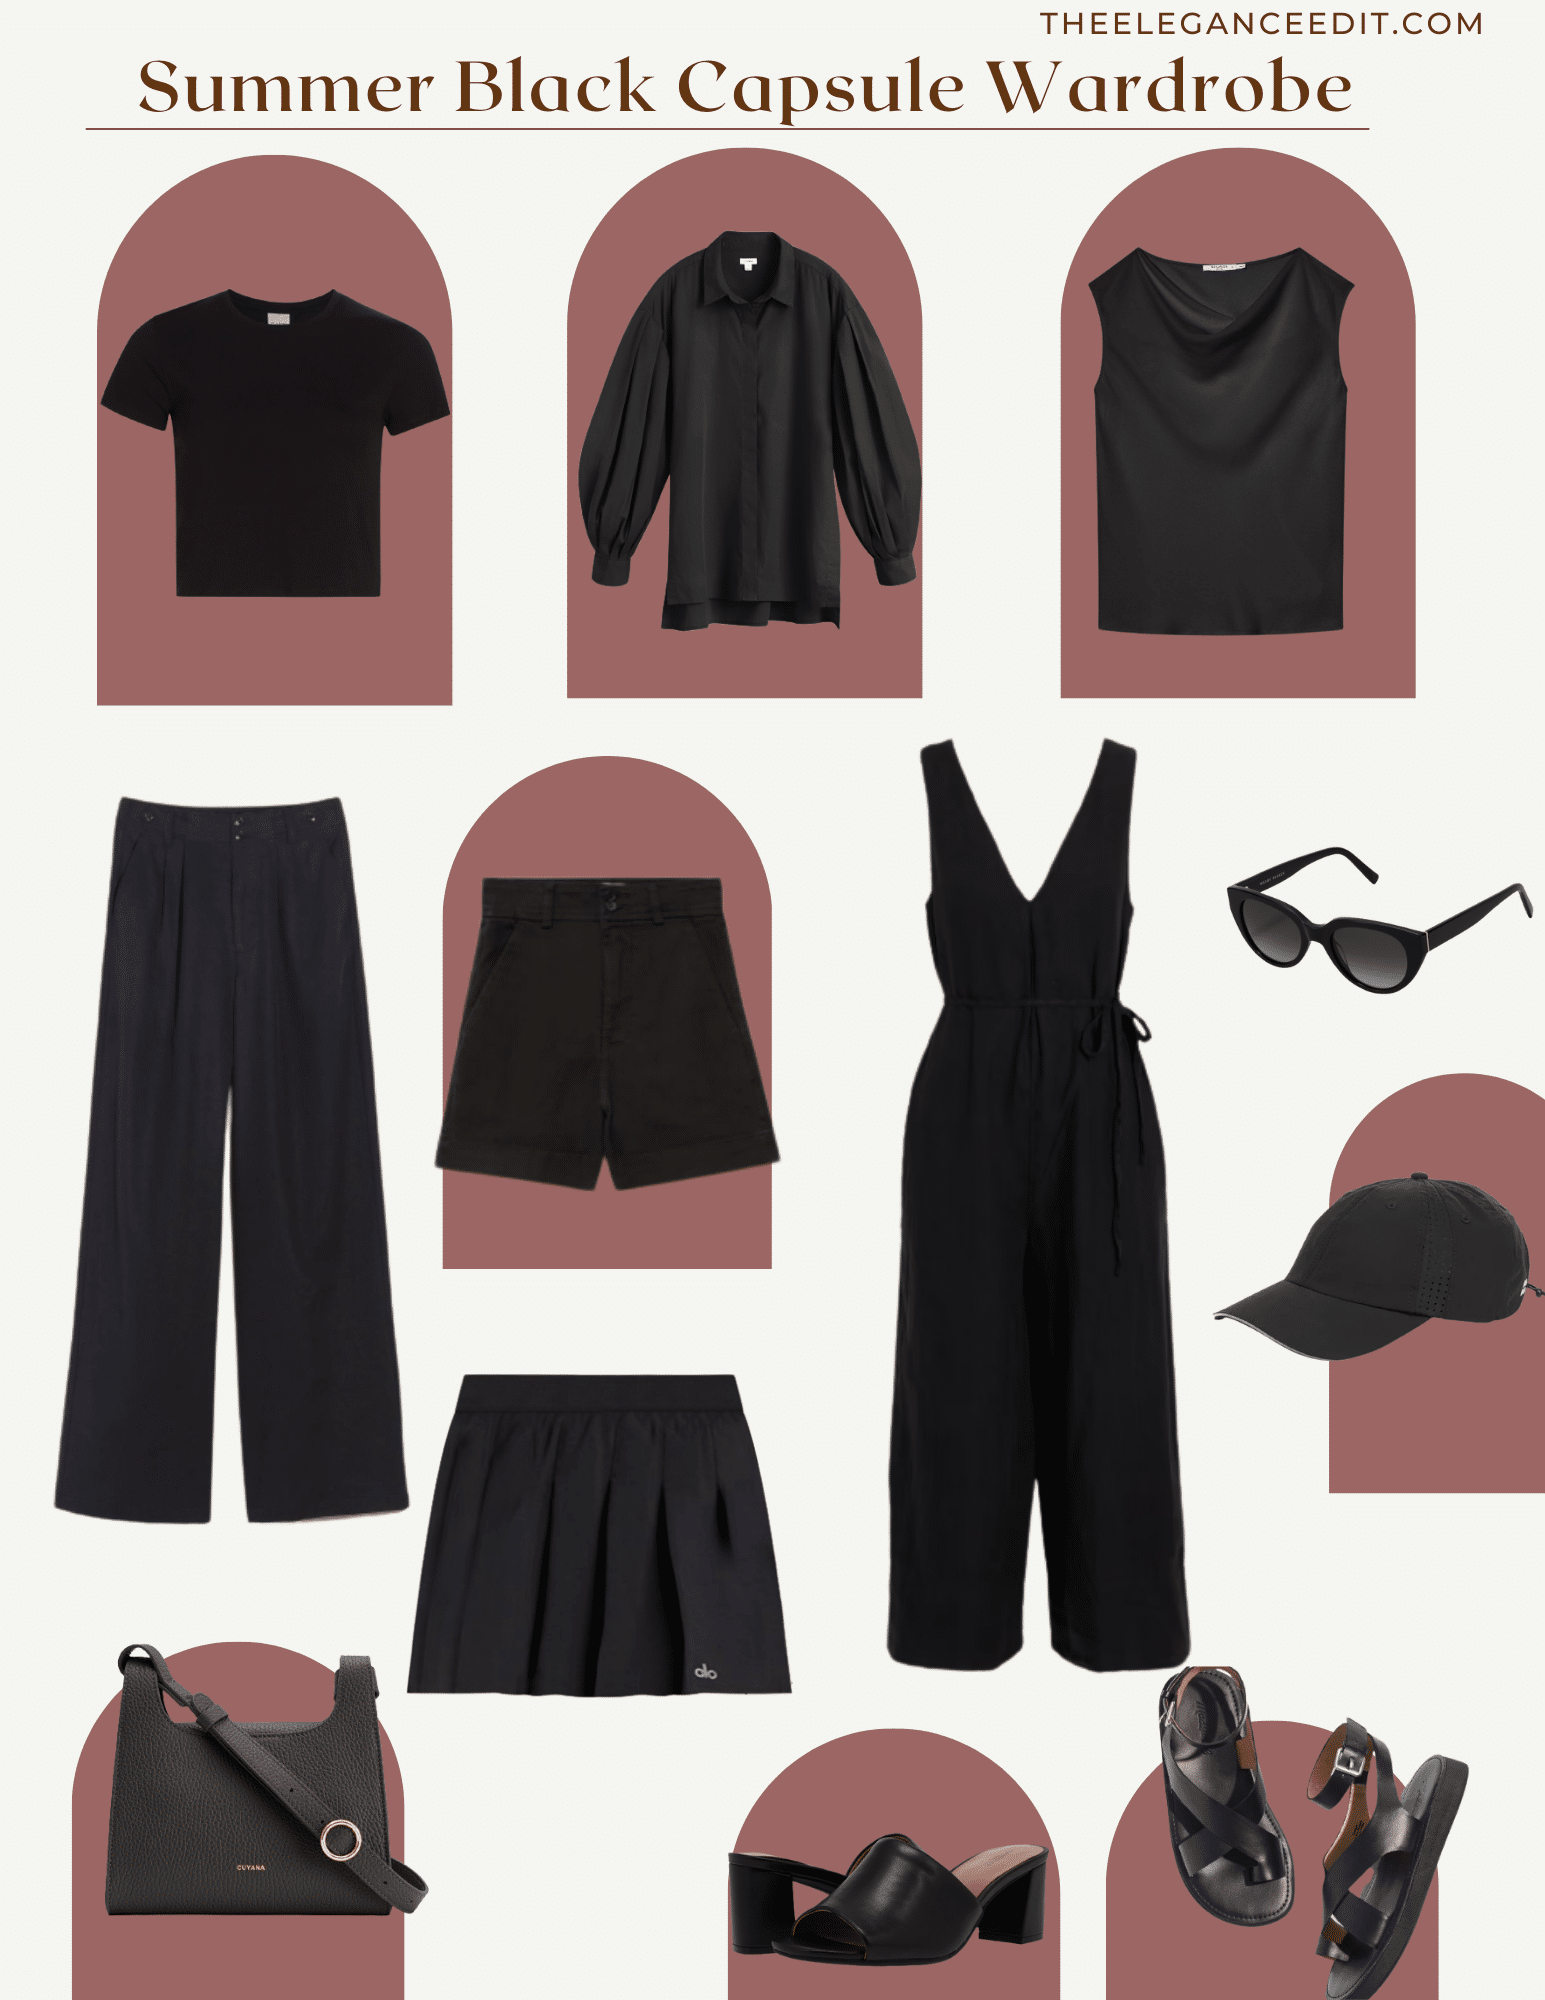 Summer Black Capsule Wardrobe